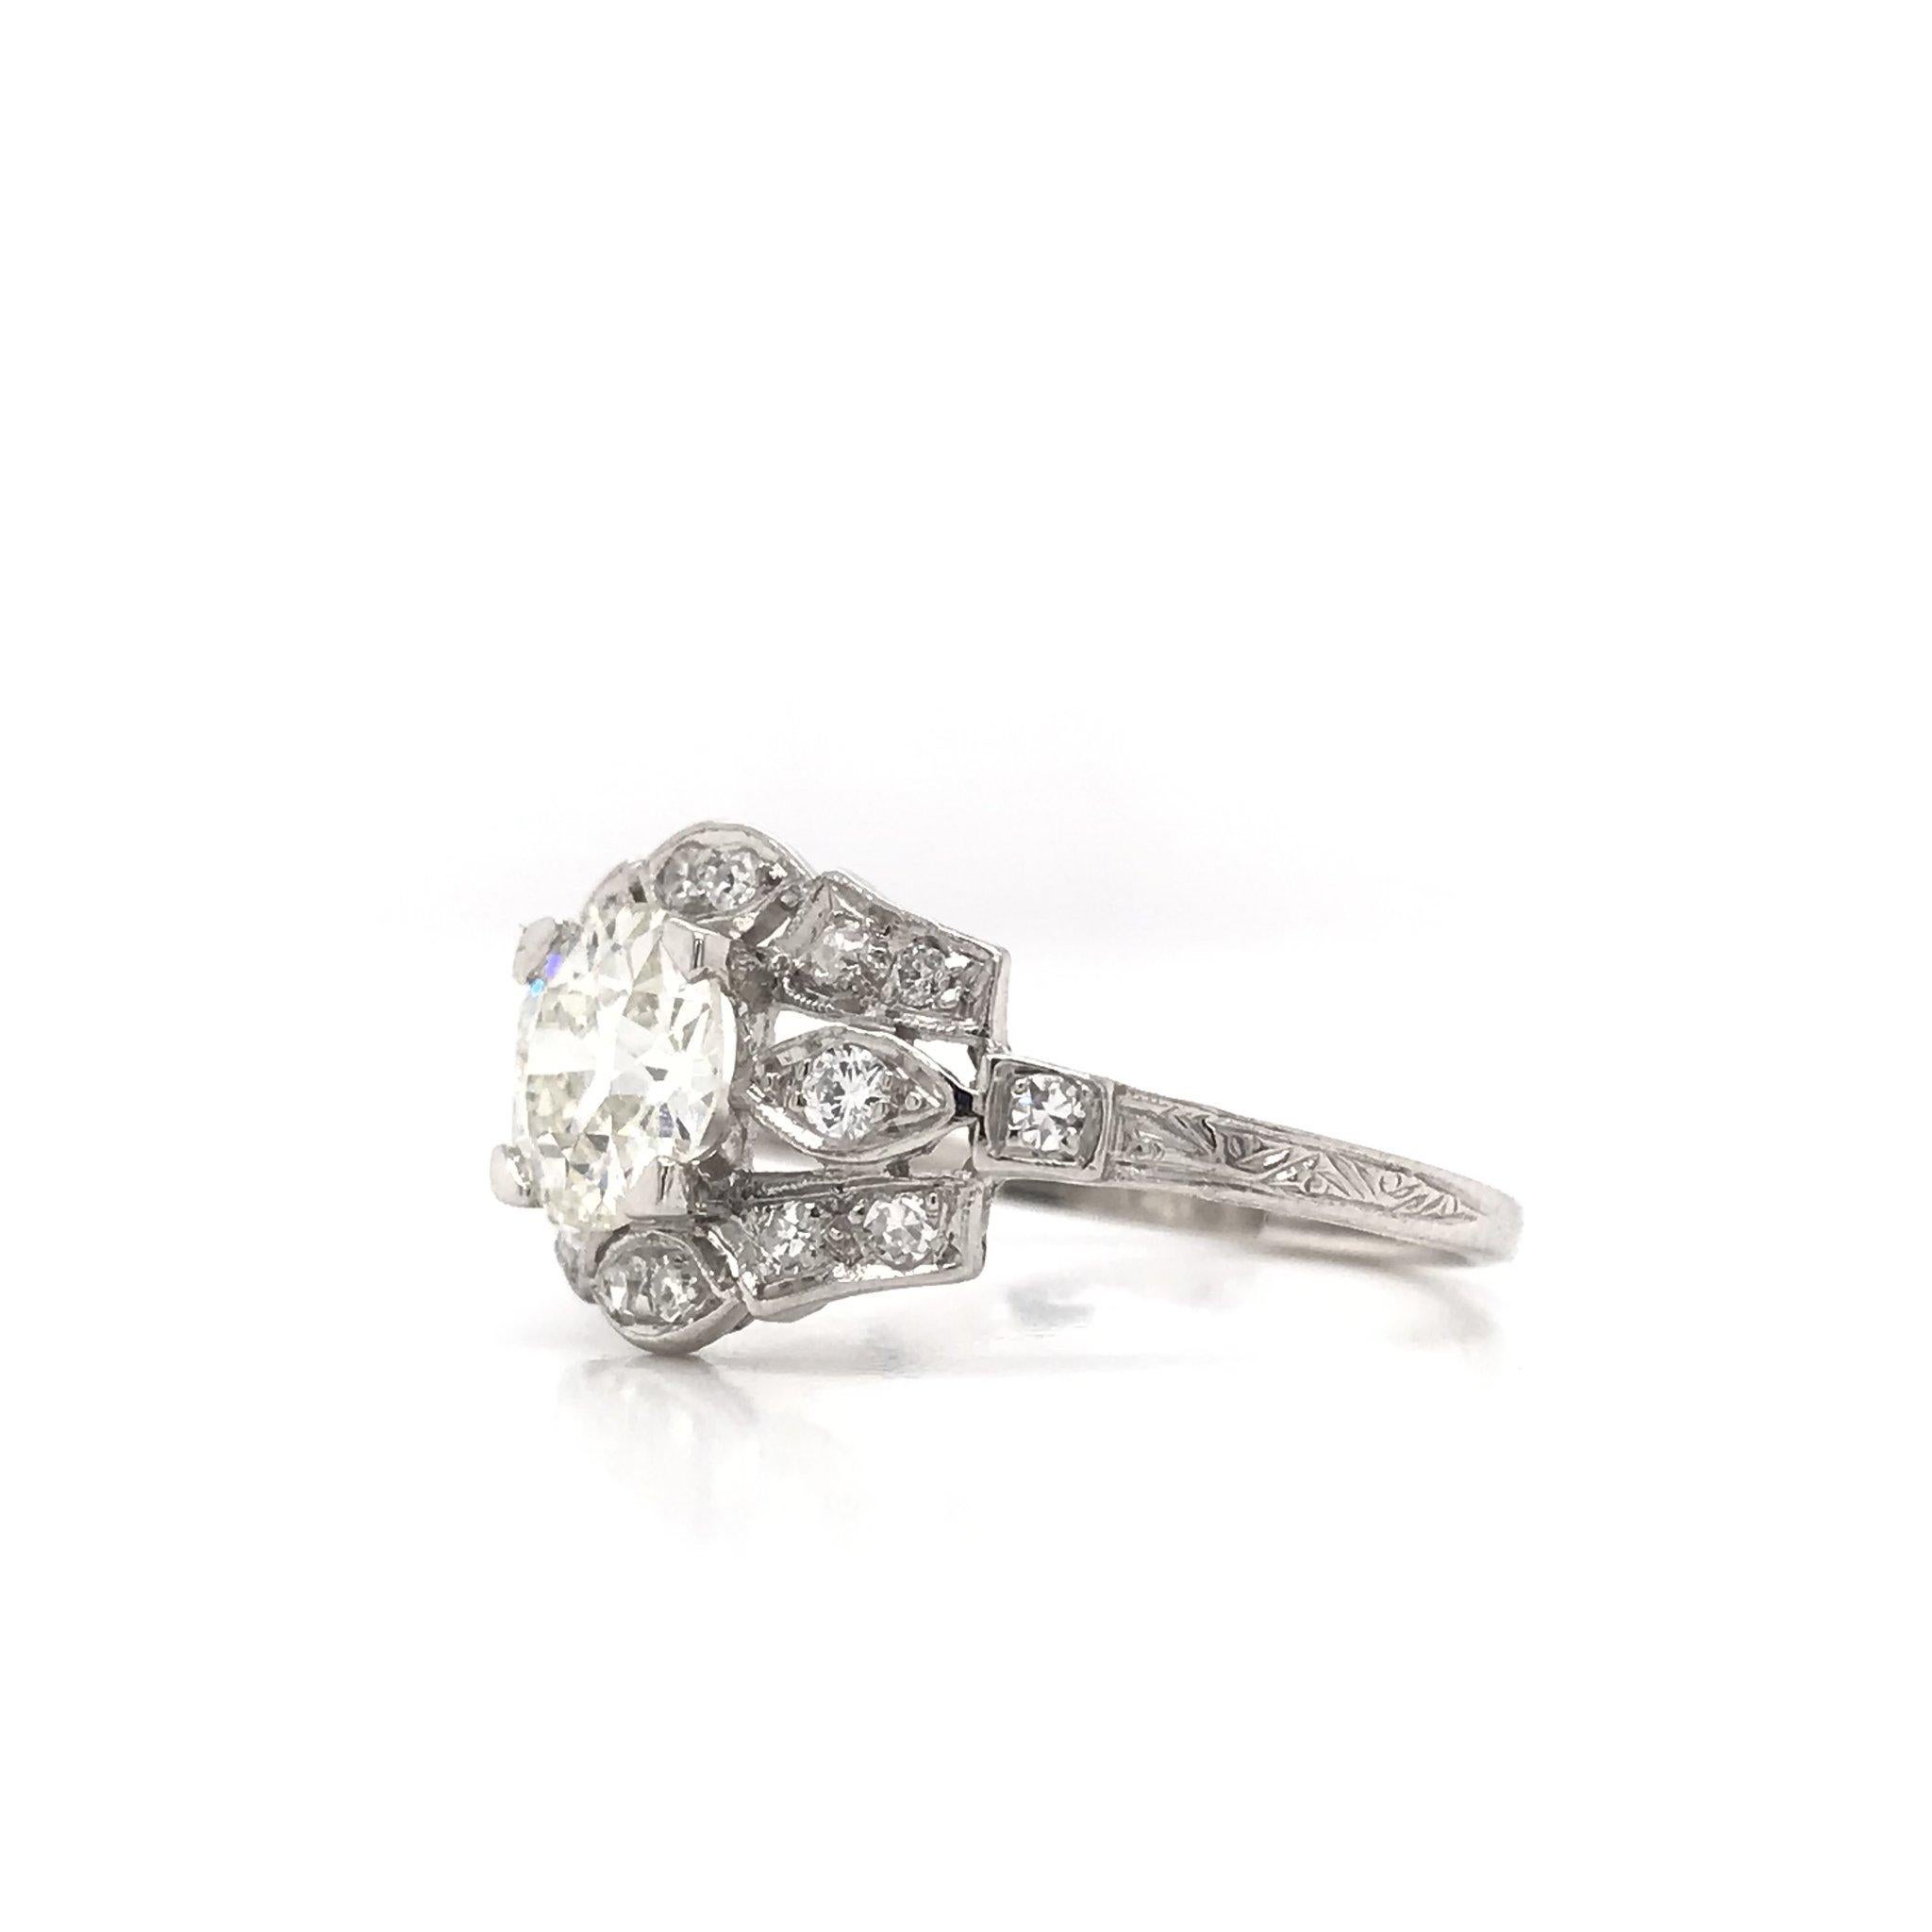 Old European Cut Art Deco 1.06 Carat Platinum Diamond Engagement Ring